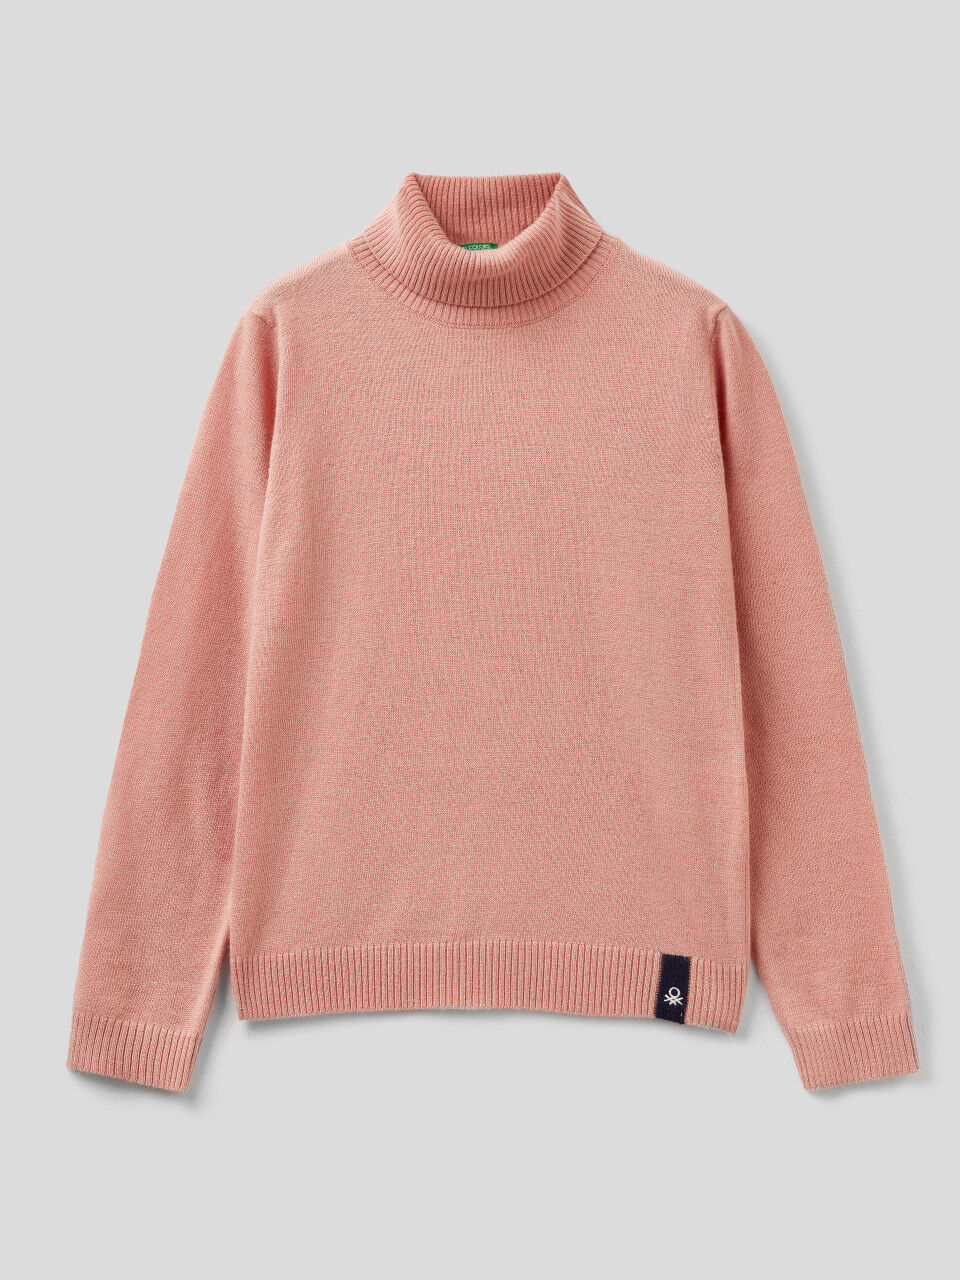 Turtleneck sweater in wool blend